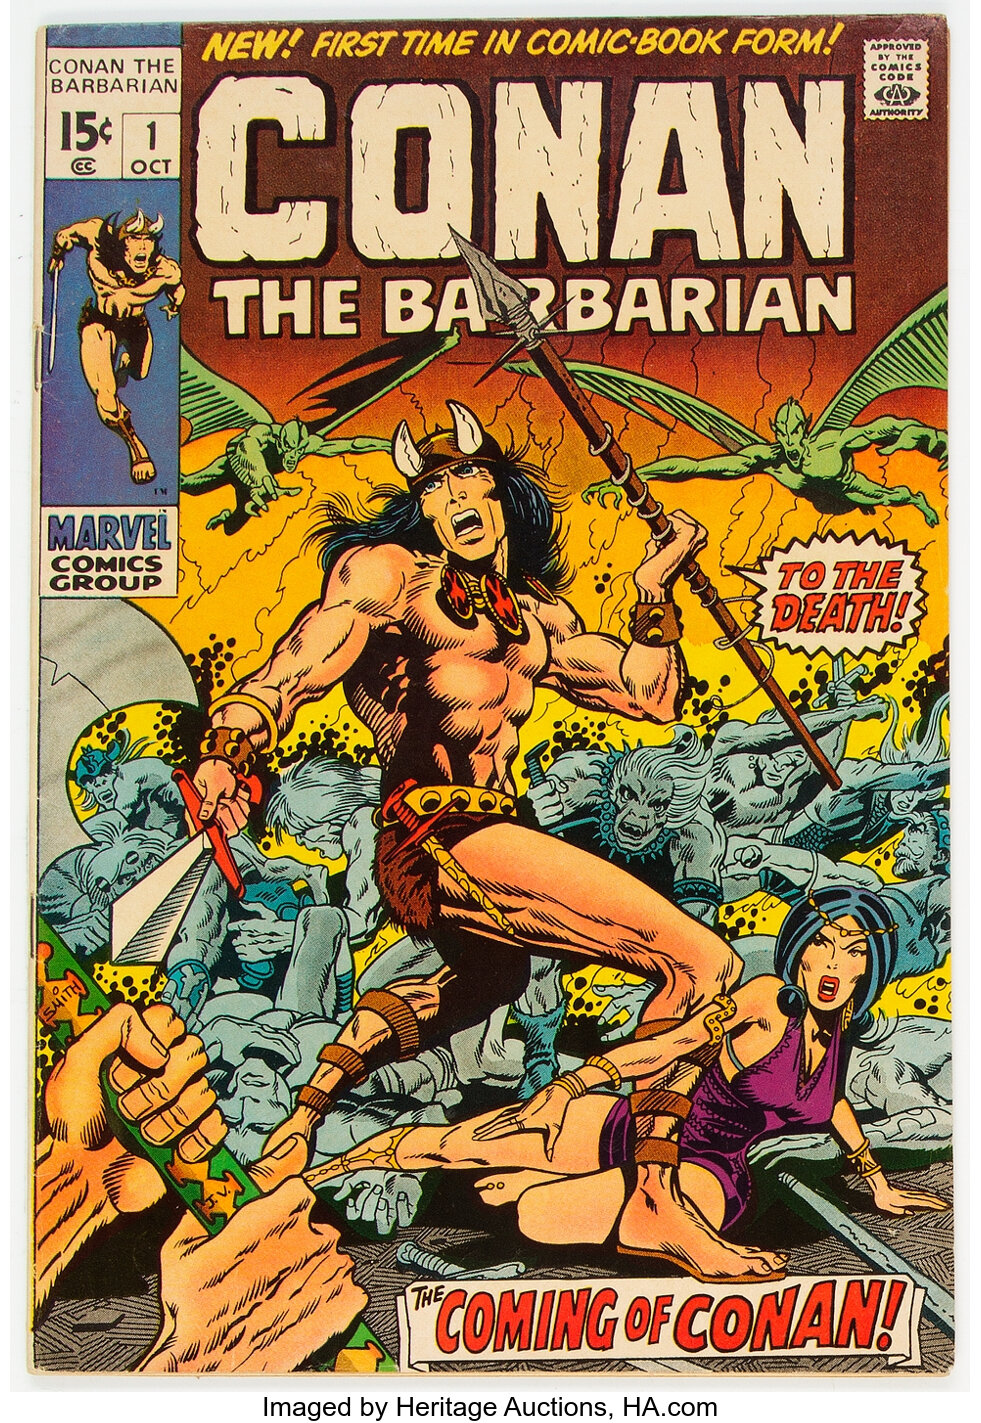 Conan the Barbarian (comics) - Wikipedia